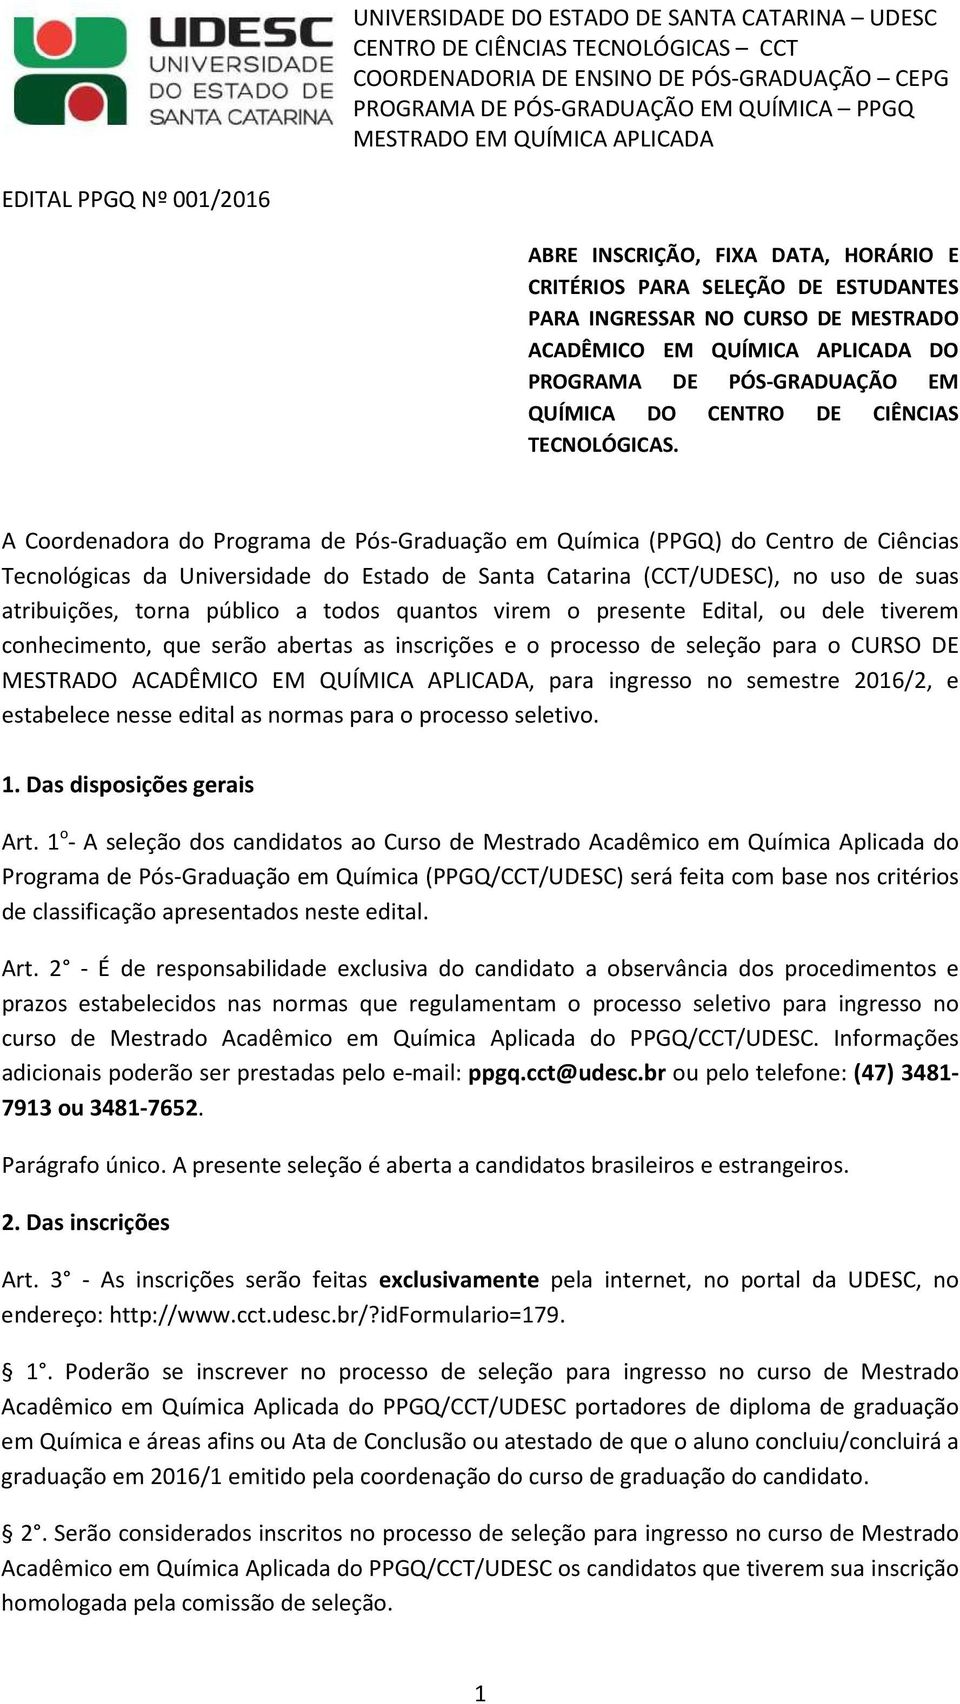 A Coordenadora do Programa de Pós-Graduação em Química (PPGQ) do Centro de Ciências Tecnológicas da Universidade do Estado de Santa Catarina (CCT/UDESC), no uso de suas atribuições, torna público a